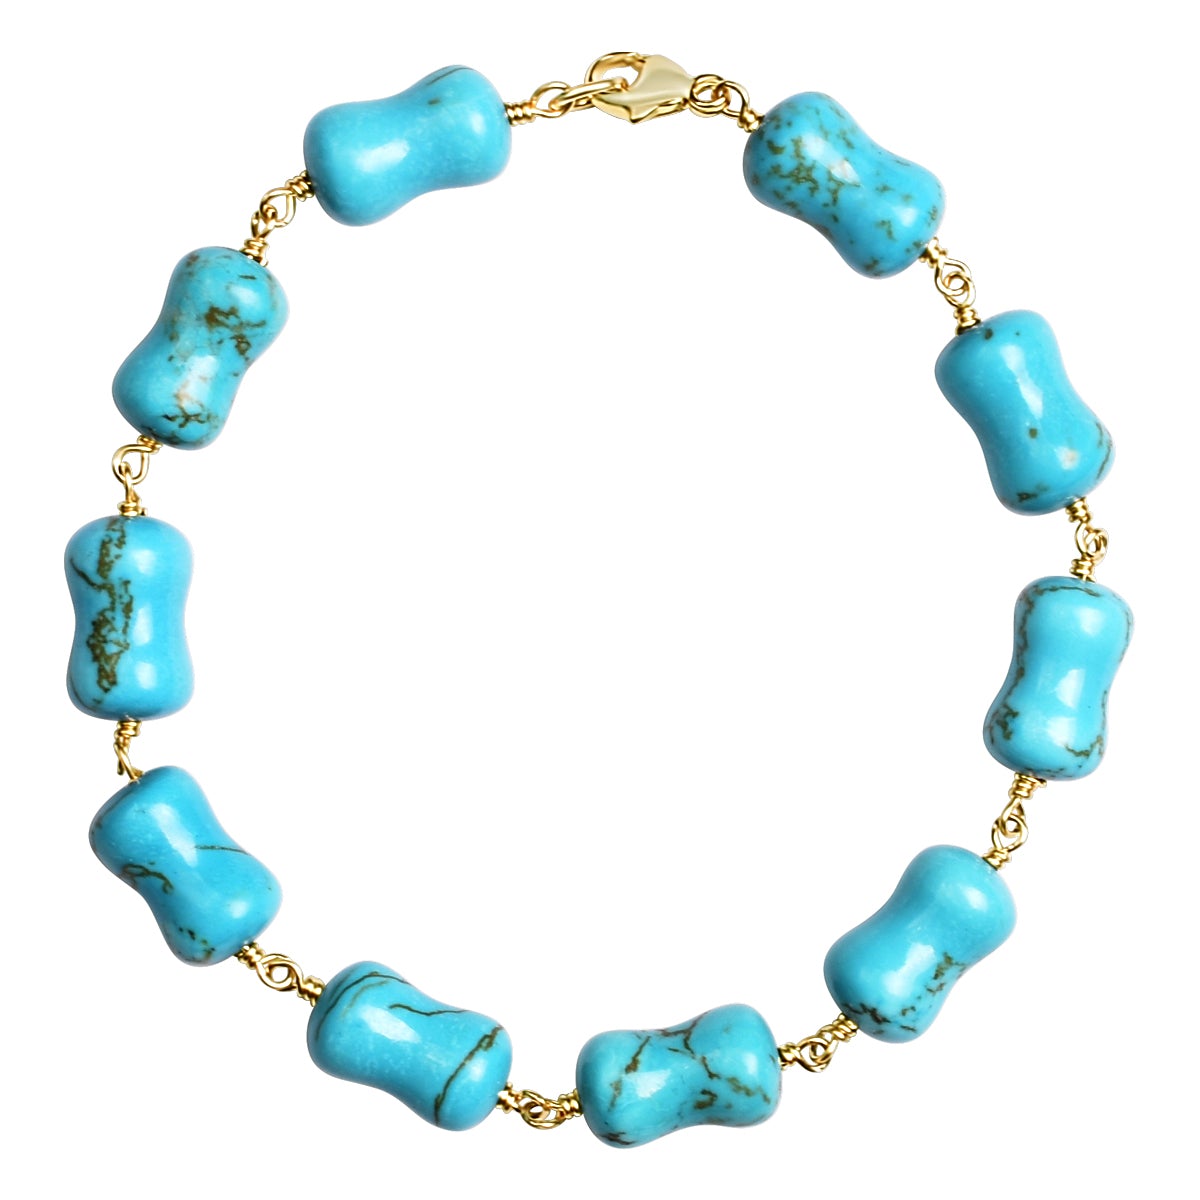 14k Turquoise Dog Bone Bracelet 7.75/8" freeshipping - Jewelmak Shop